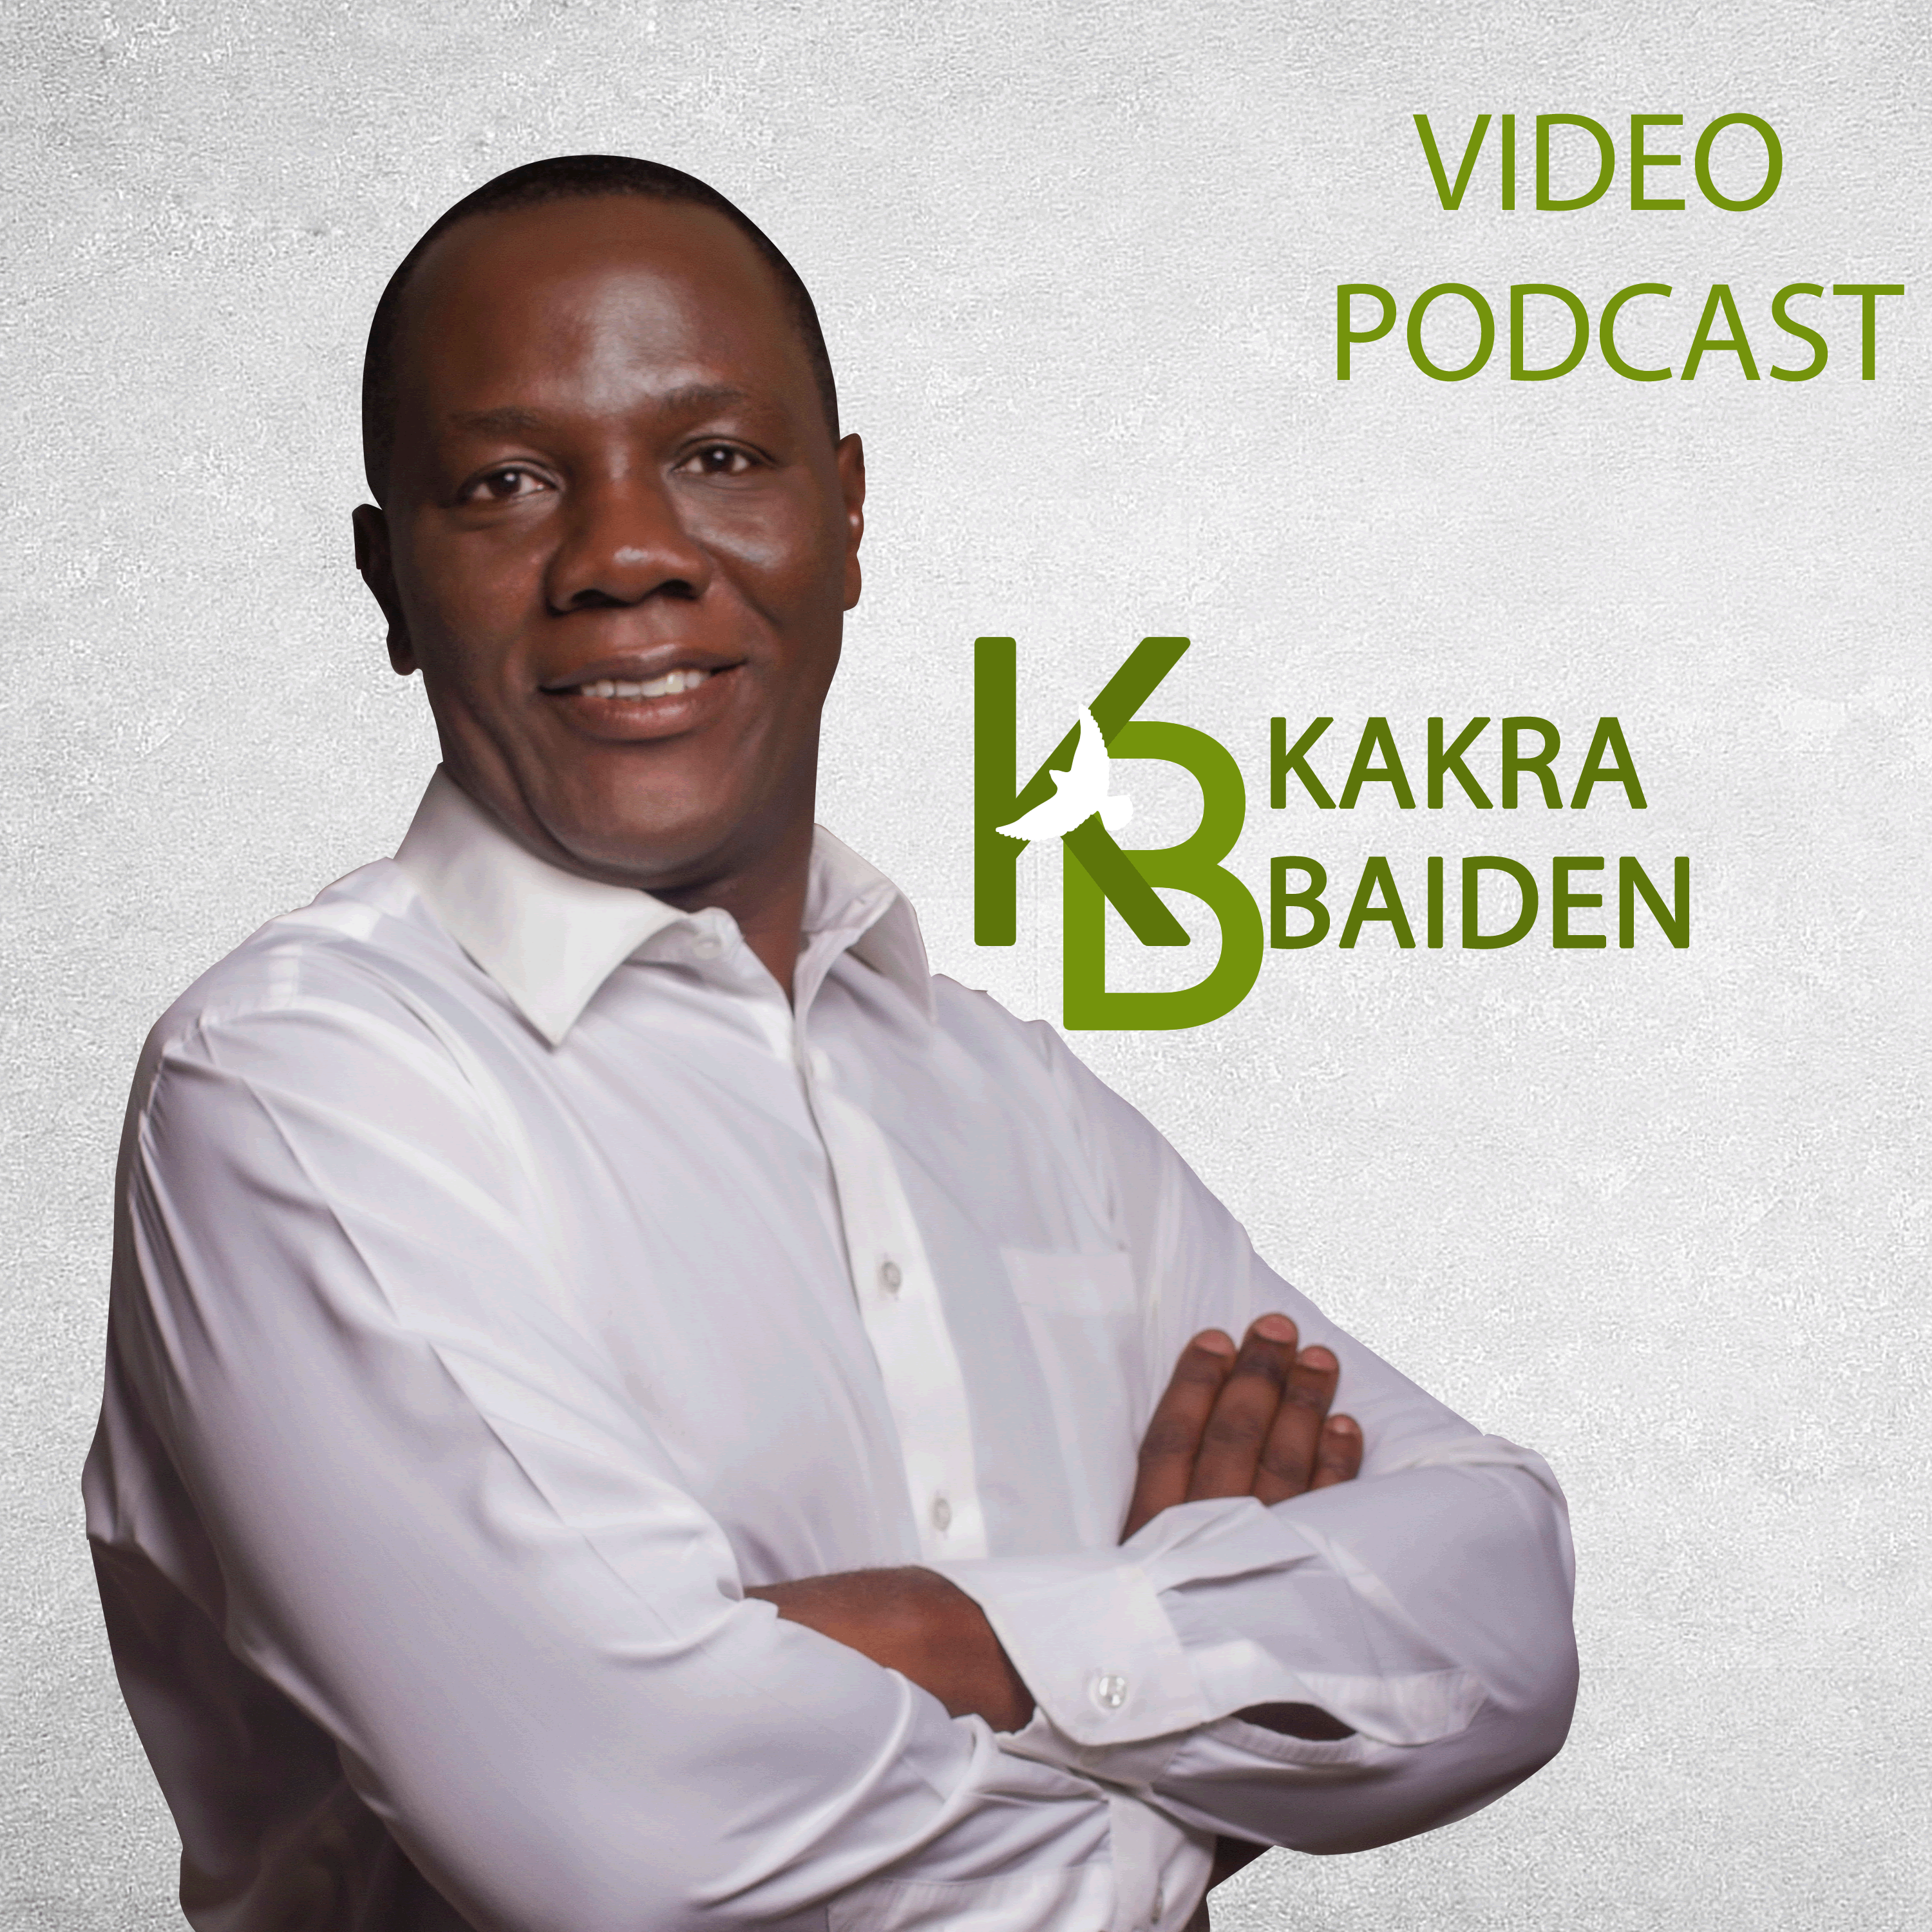 Kakra Baiden Video Podcast